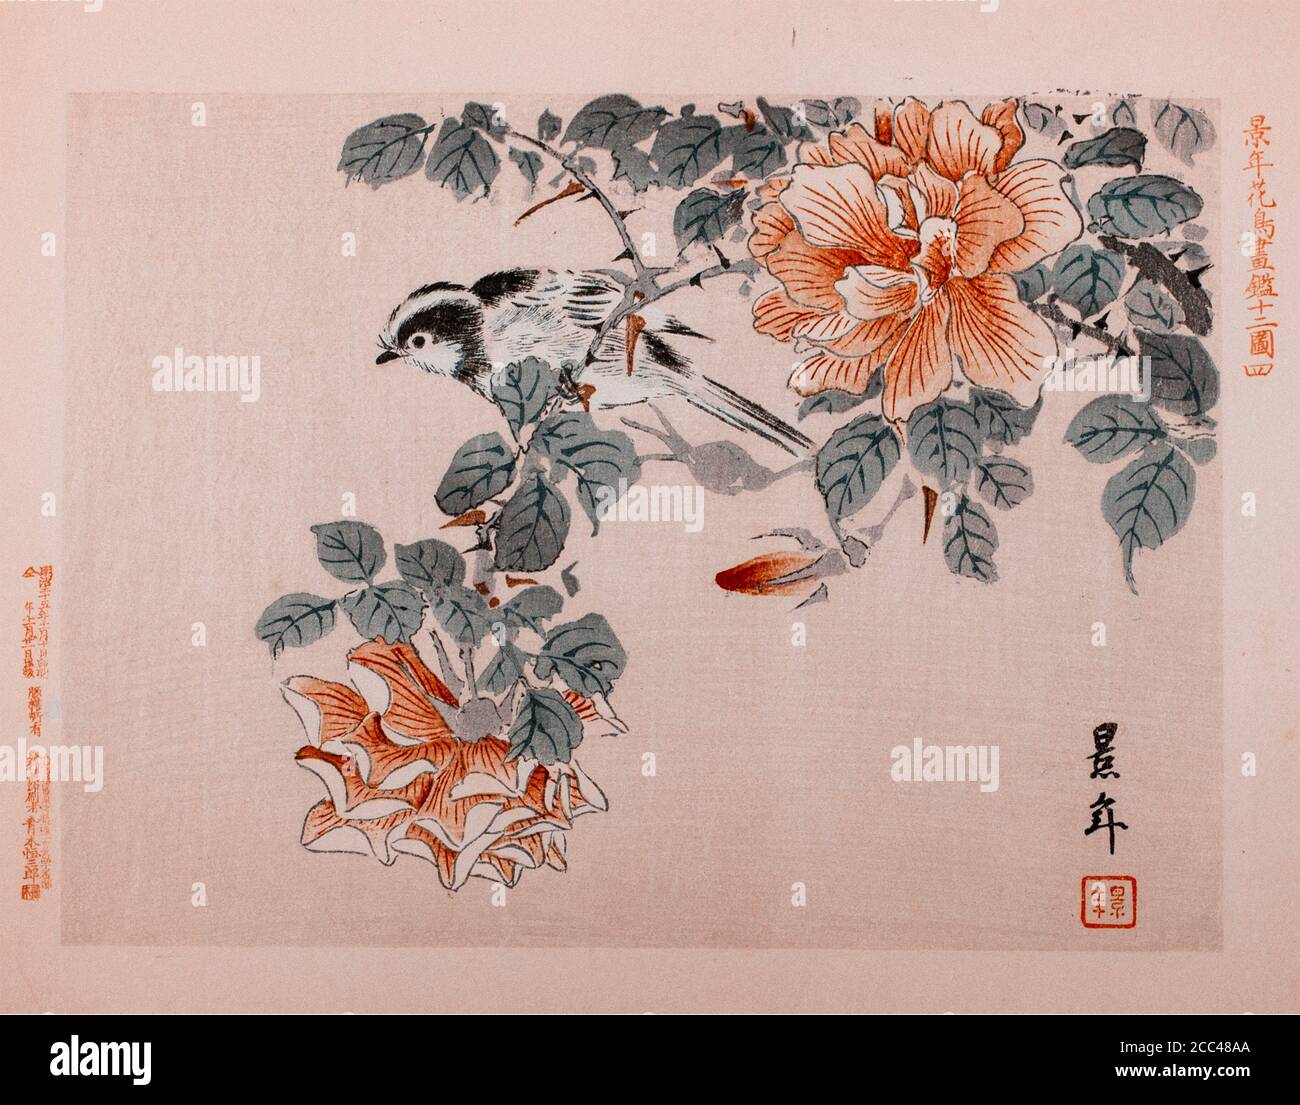 Imao keinen: Keinen Kacho Gafu (albums d'oiseaux et de fleurs four Seasons), oiseaux et roses. Japon. 1892 Imao keinen (1845 – 1924) est un peintre japonais Banque D'Images